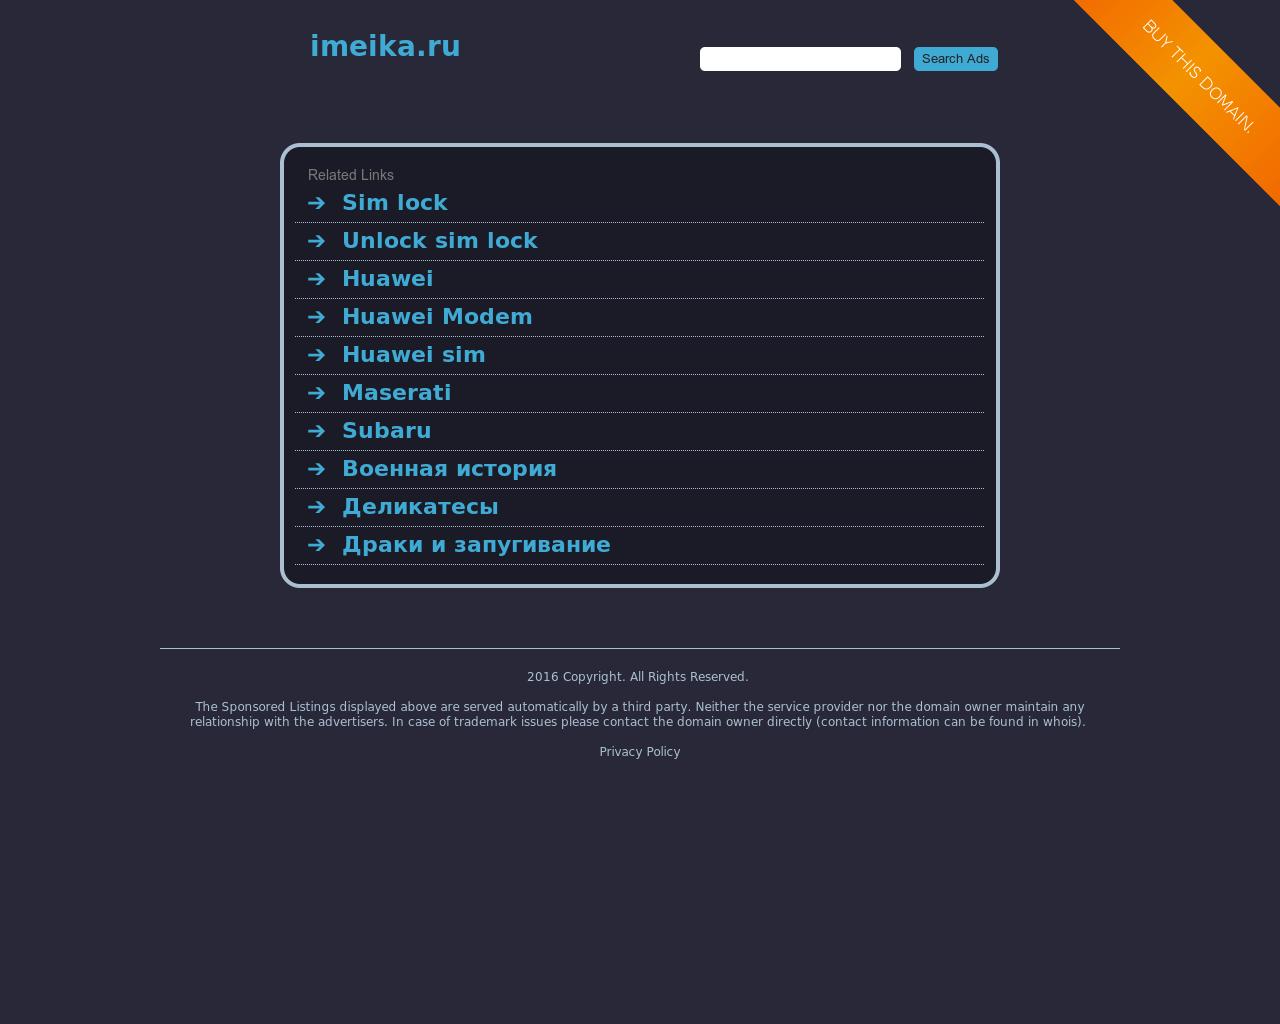 Изображение сайта imeika.ru в разрешении 1280x1024